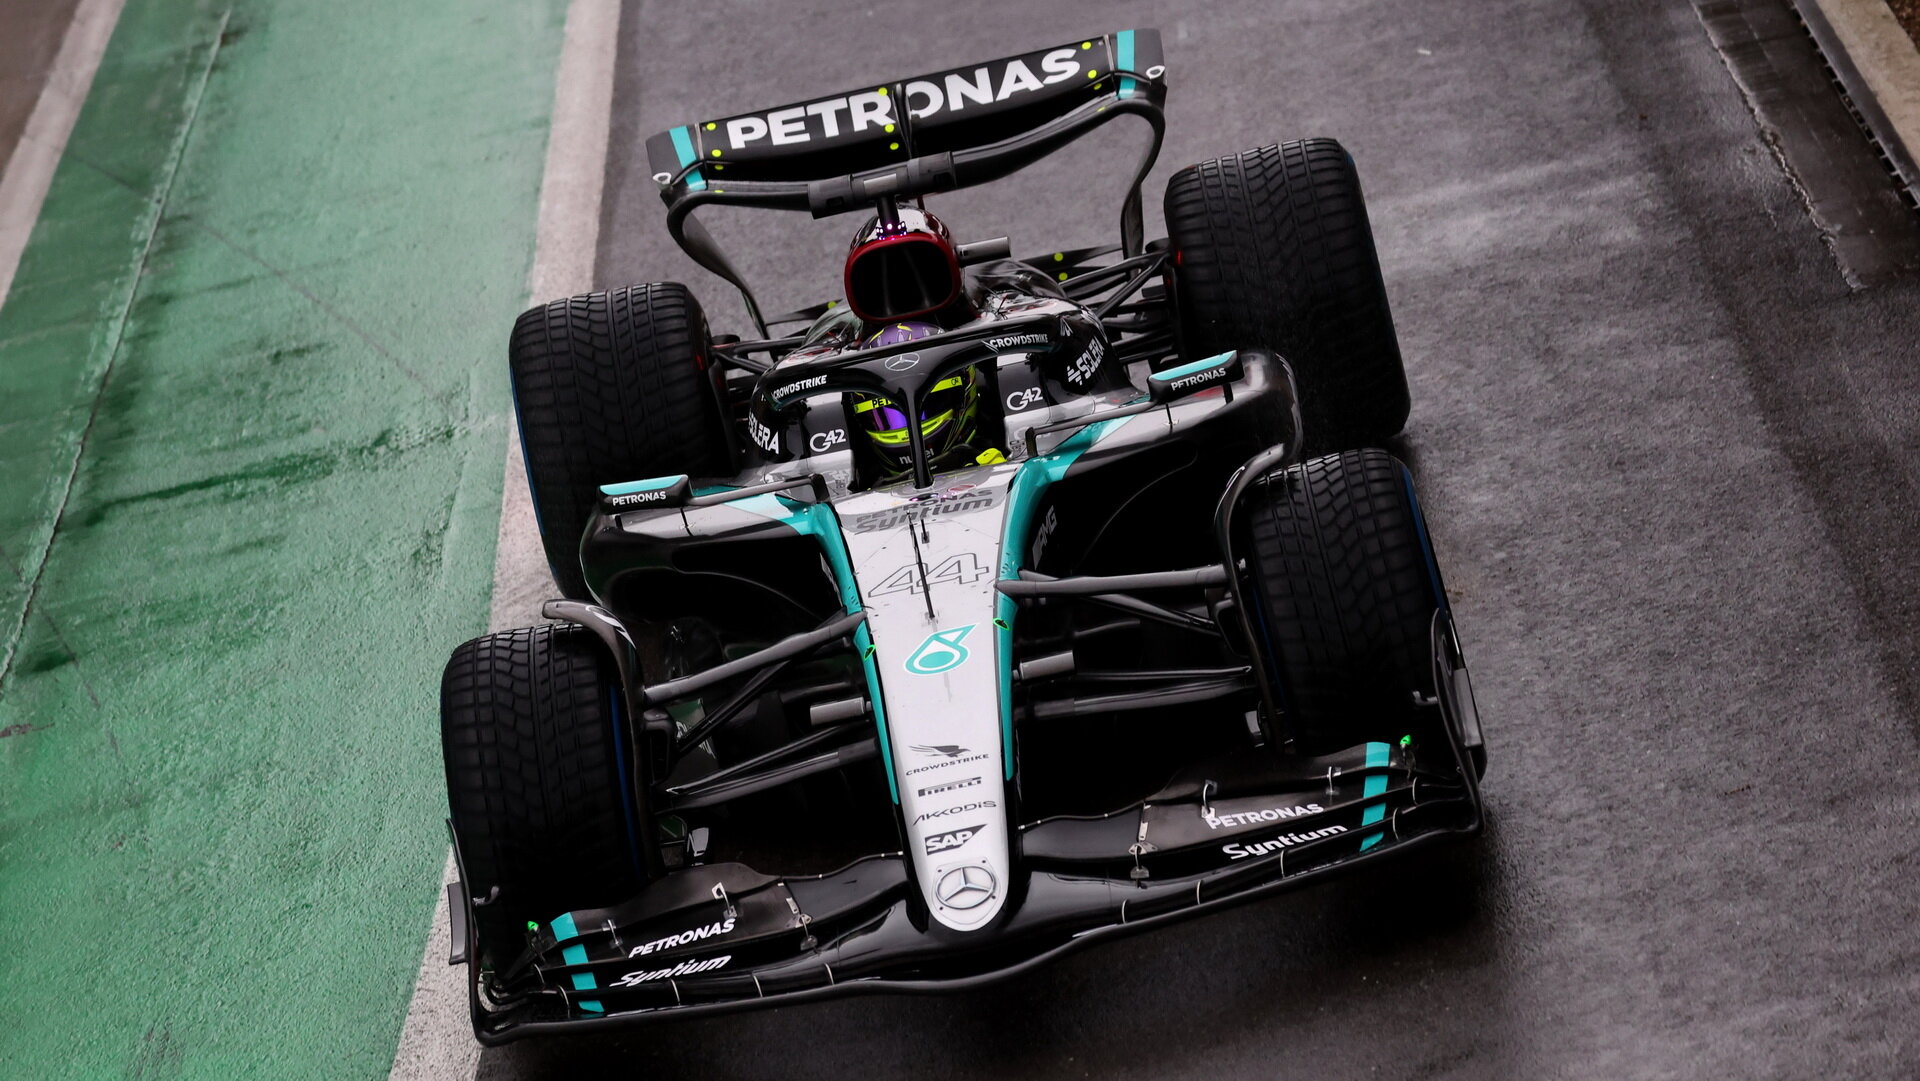 Lewis Hamilton testoval nový vůz Mercedes F1 W15 na okruhu v Silverstone